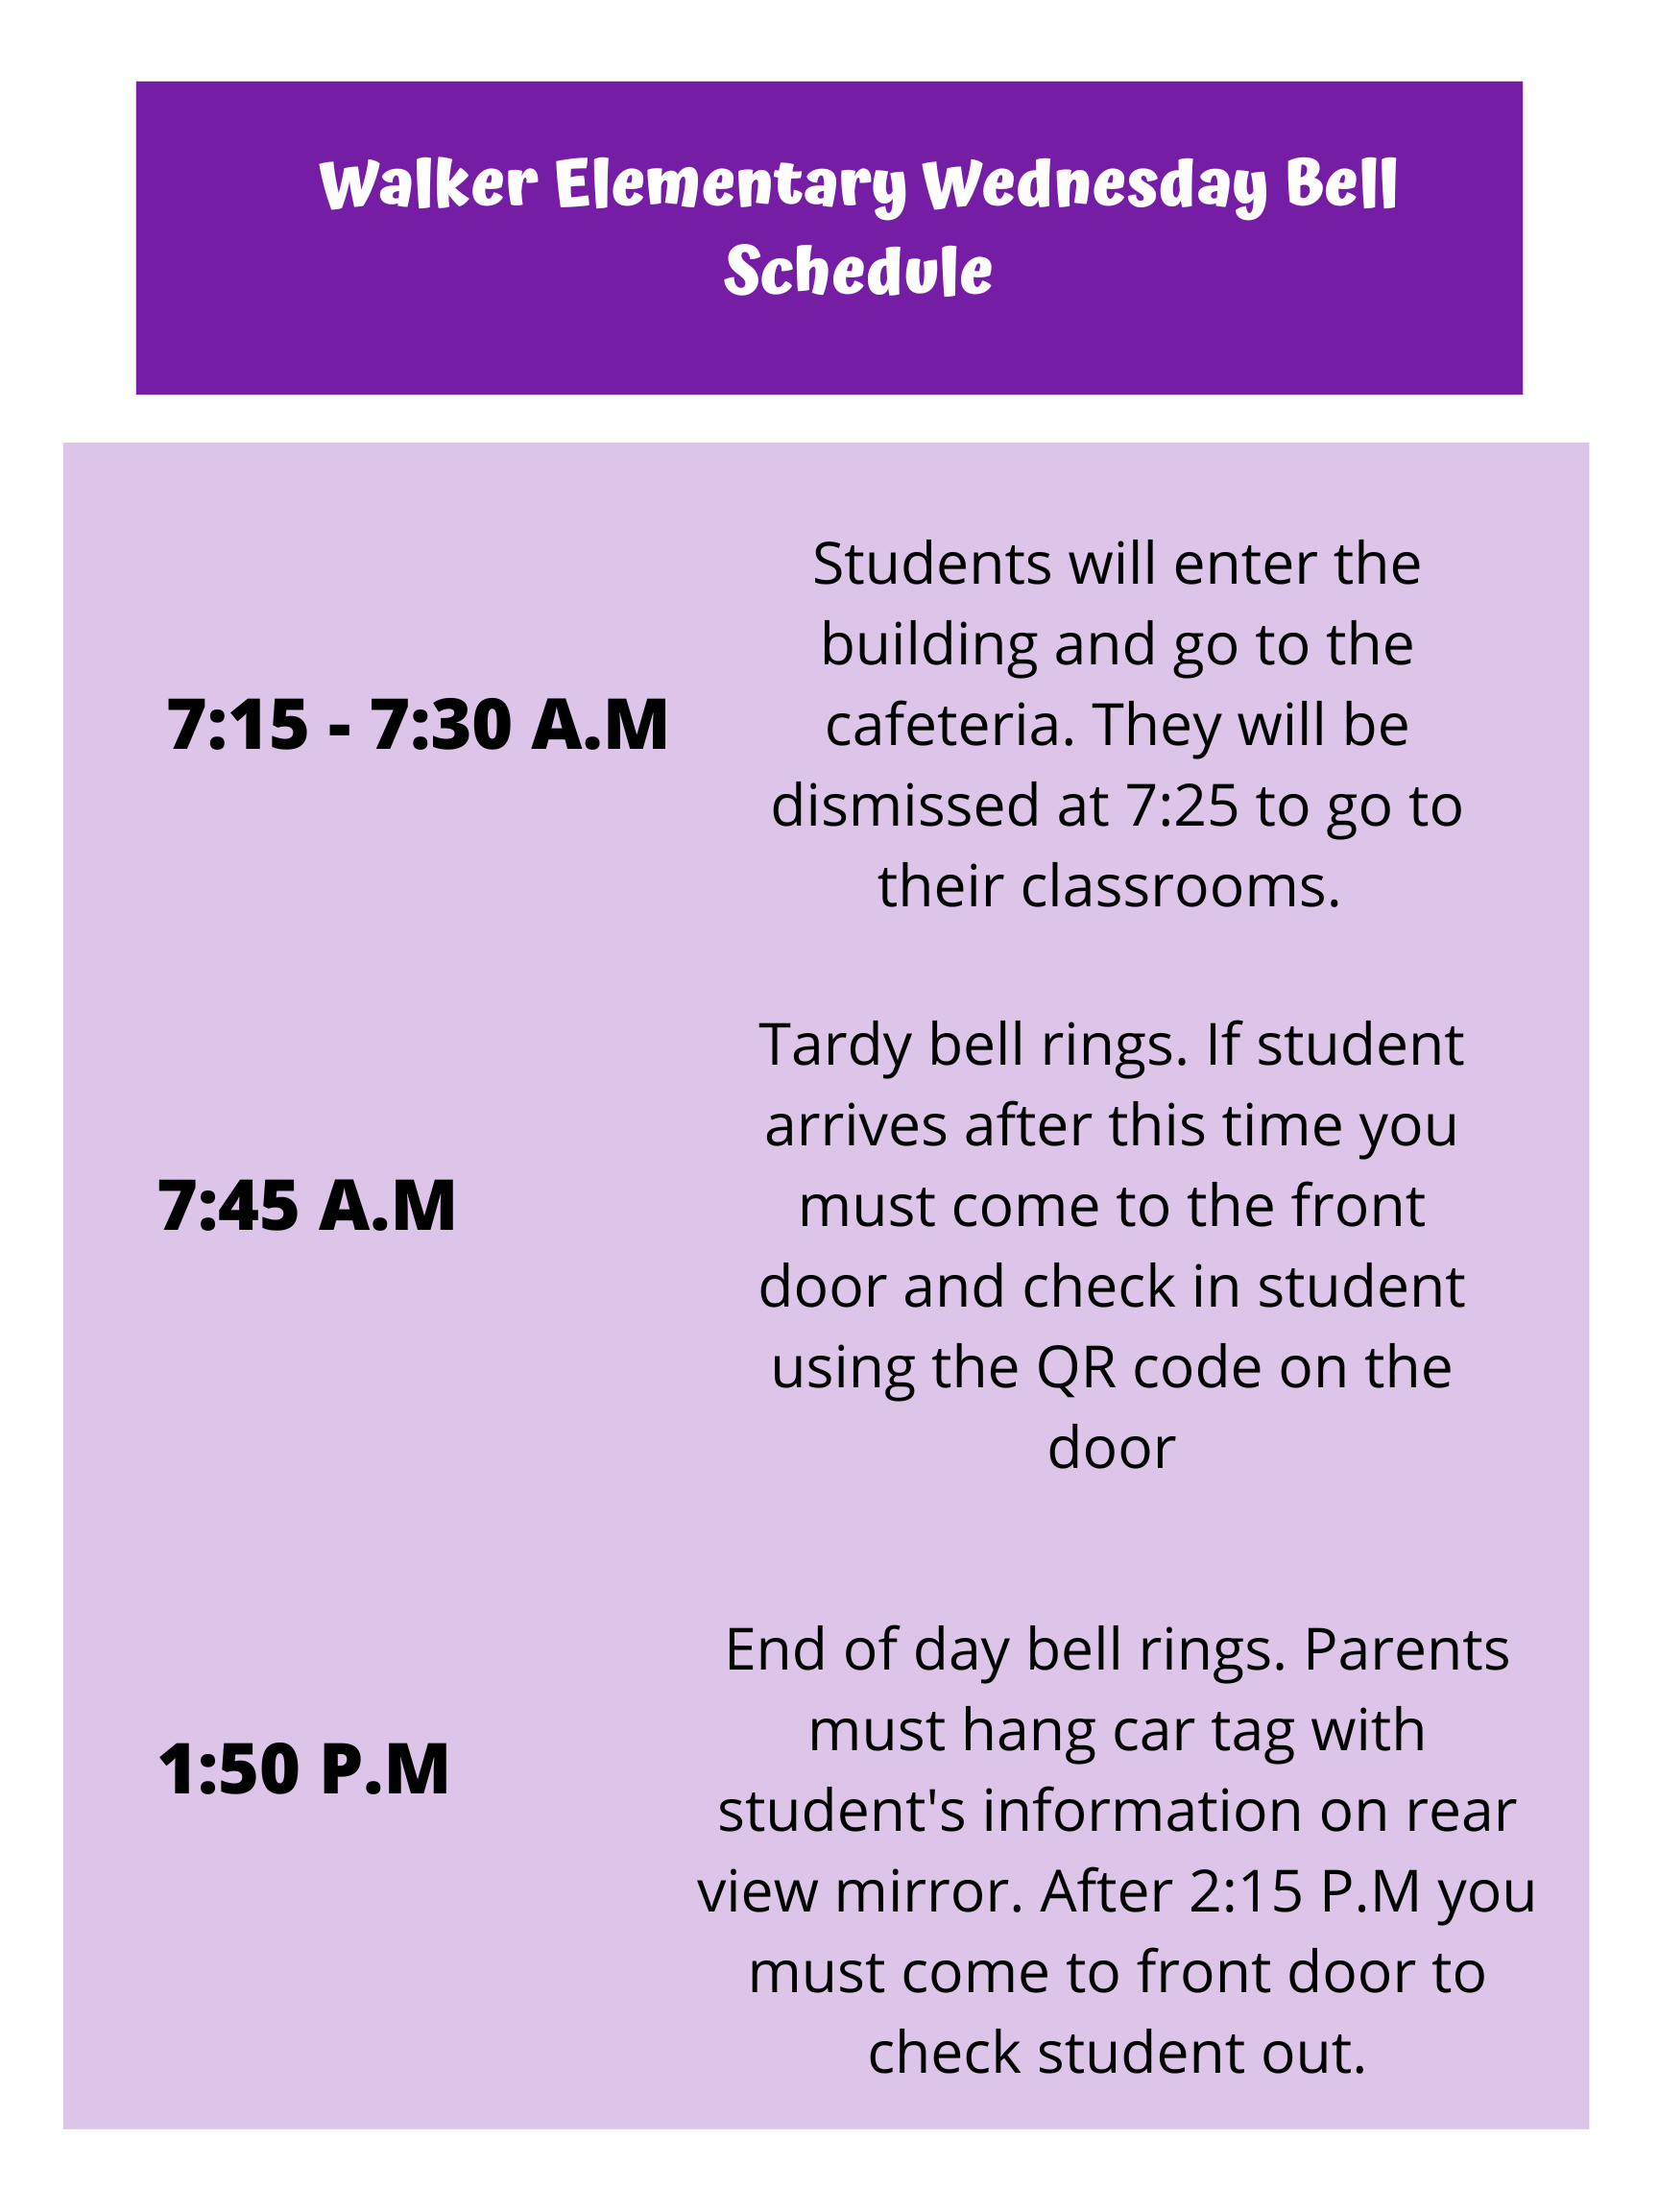 Walker Wednesday Bell Schedule